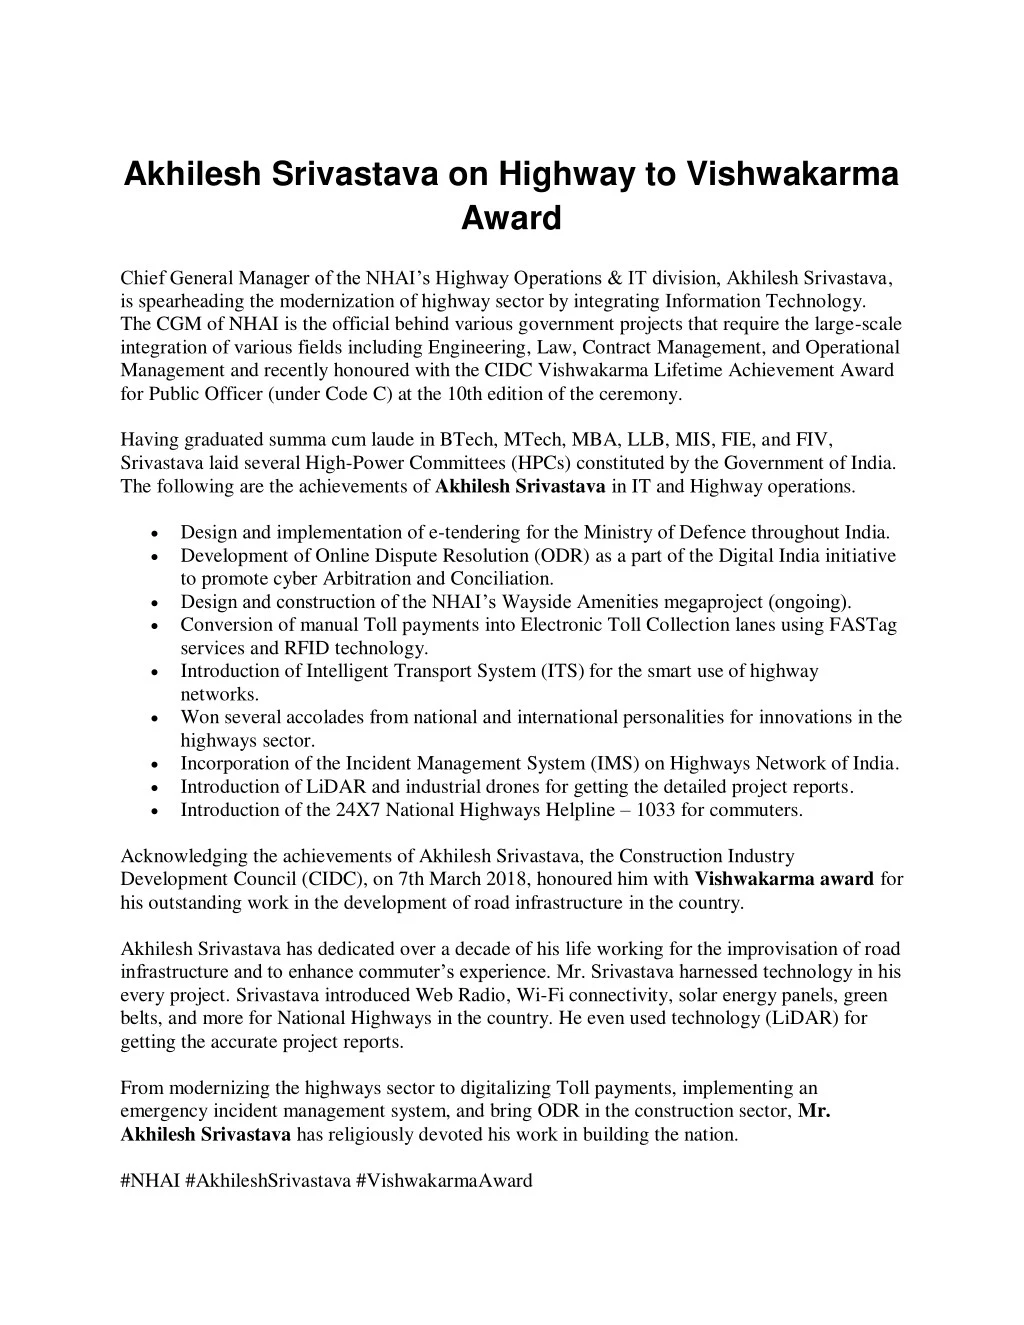 akhilesh srivastava on highway to vishwakarma